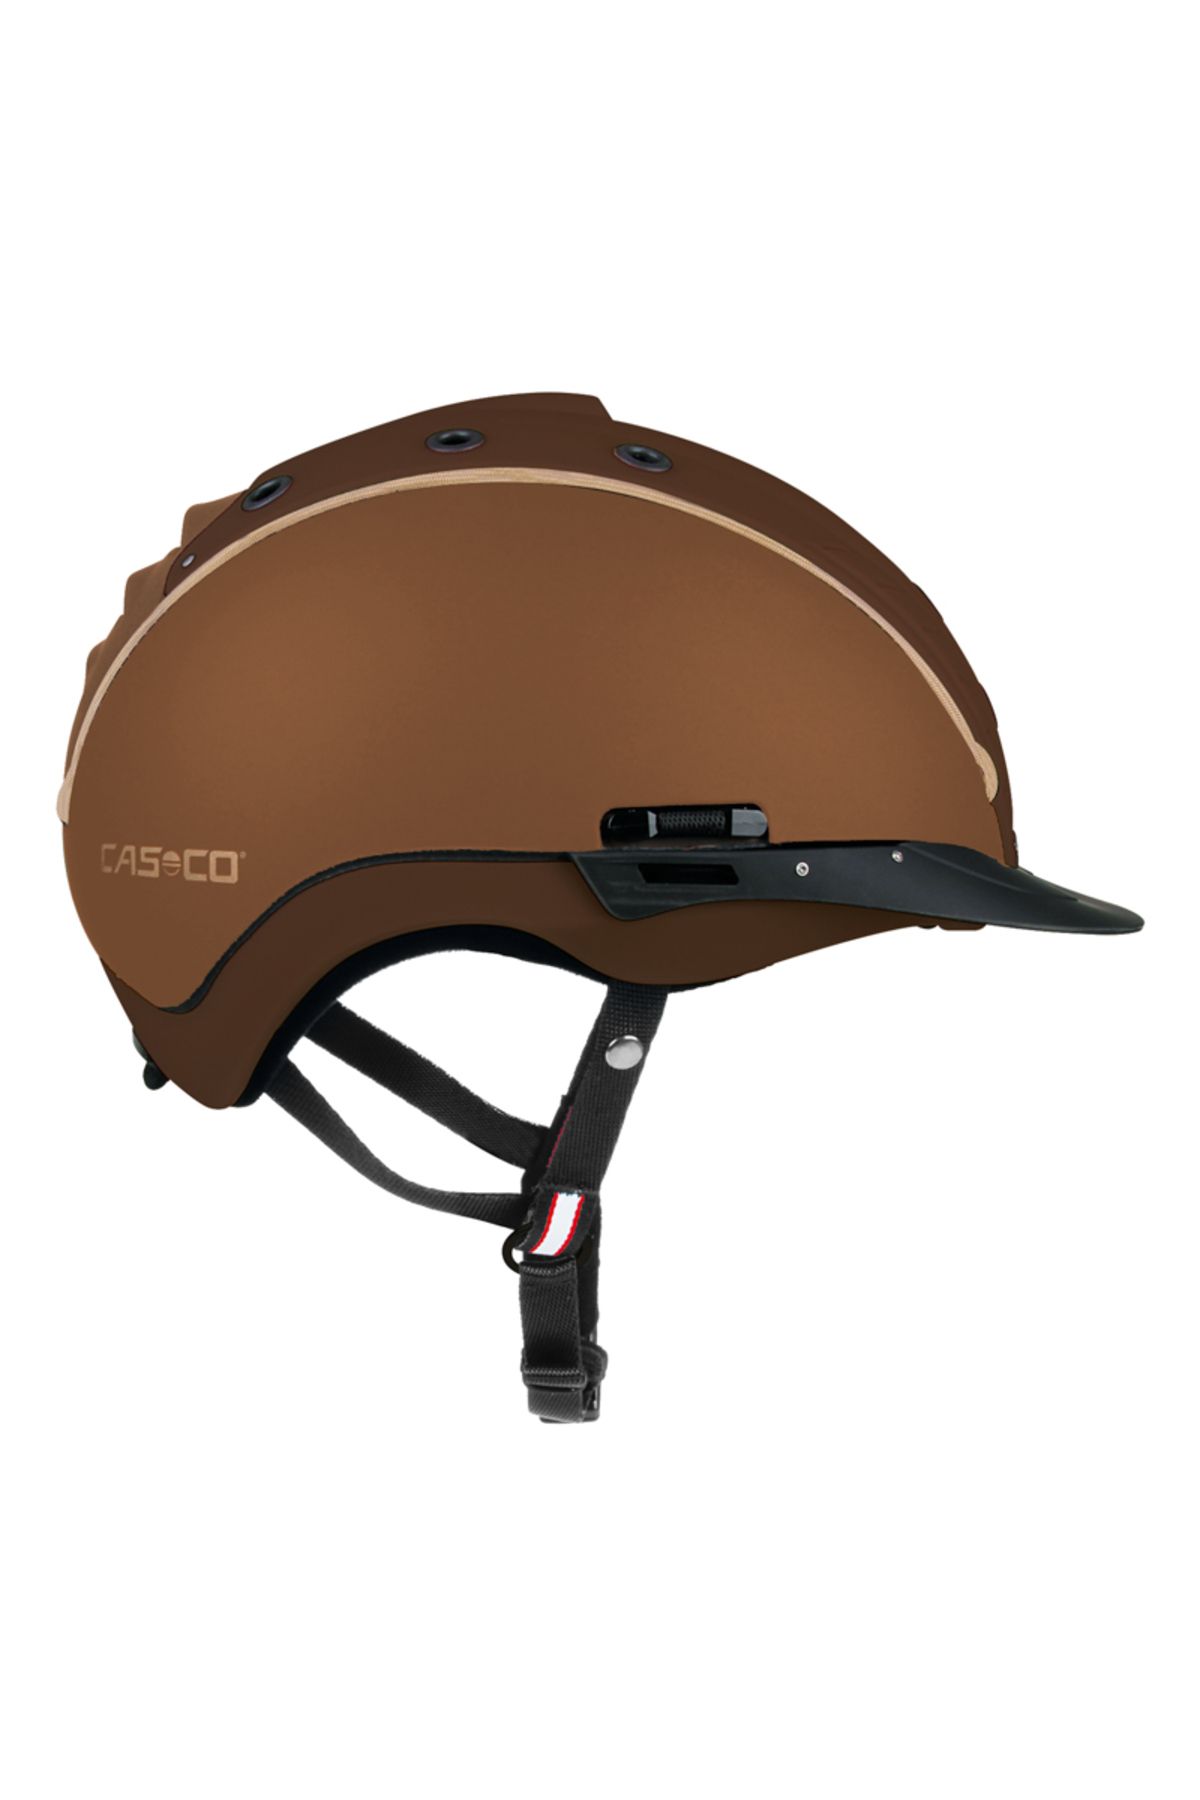 Casco Tog - CASCO MISTRALL-2 Riding Helmet XL